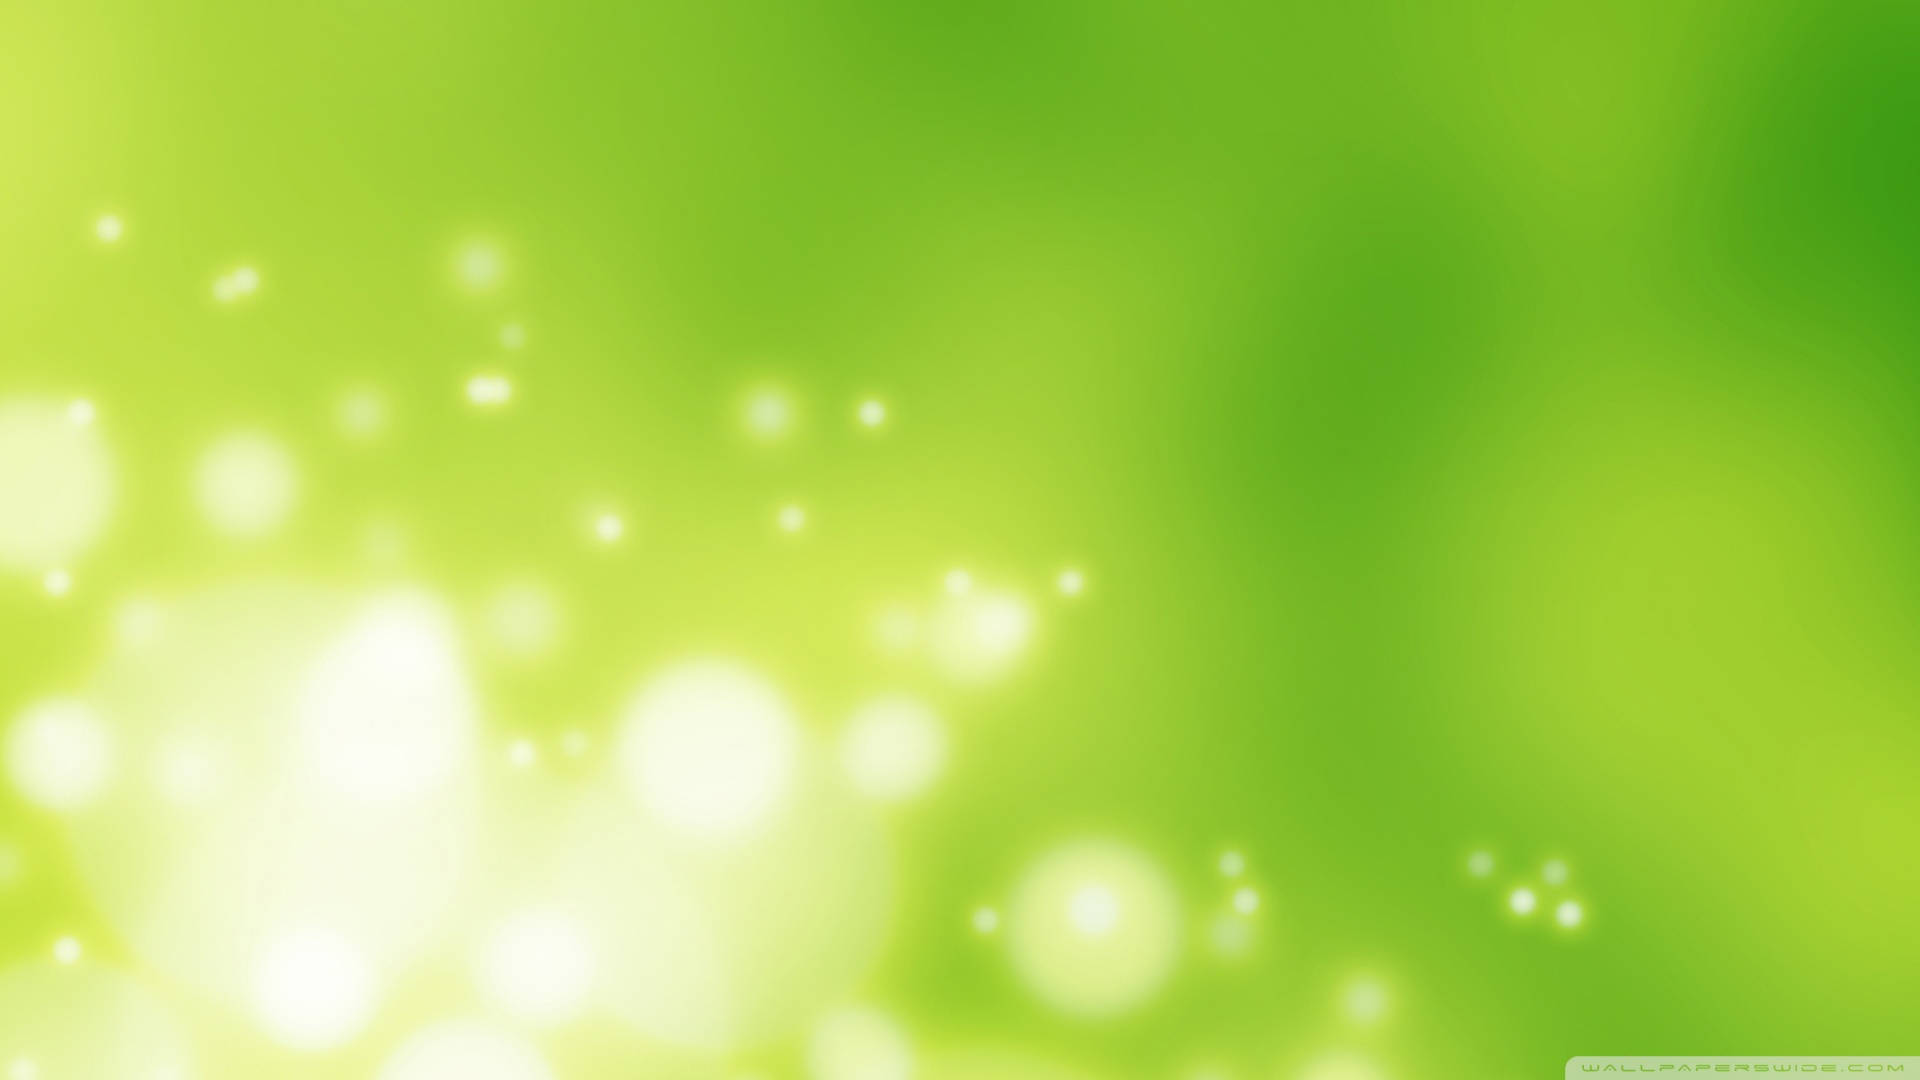 Free Light Green Plain Wallpaper Downloads, [100+] Light Green Plain  Wallpapers for FREE 